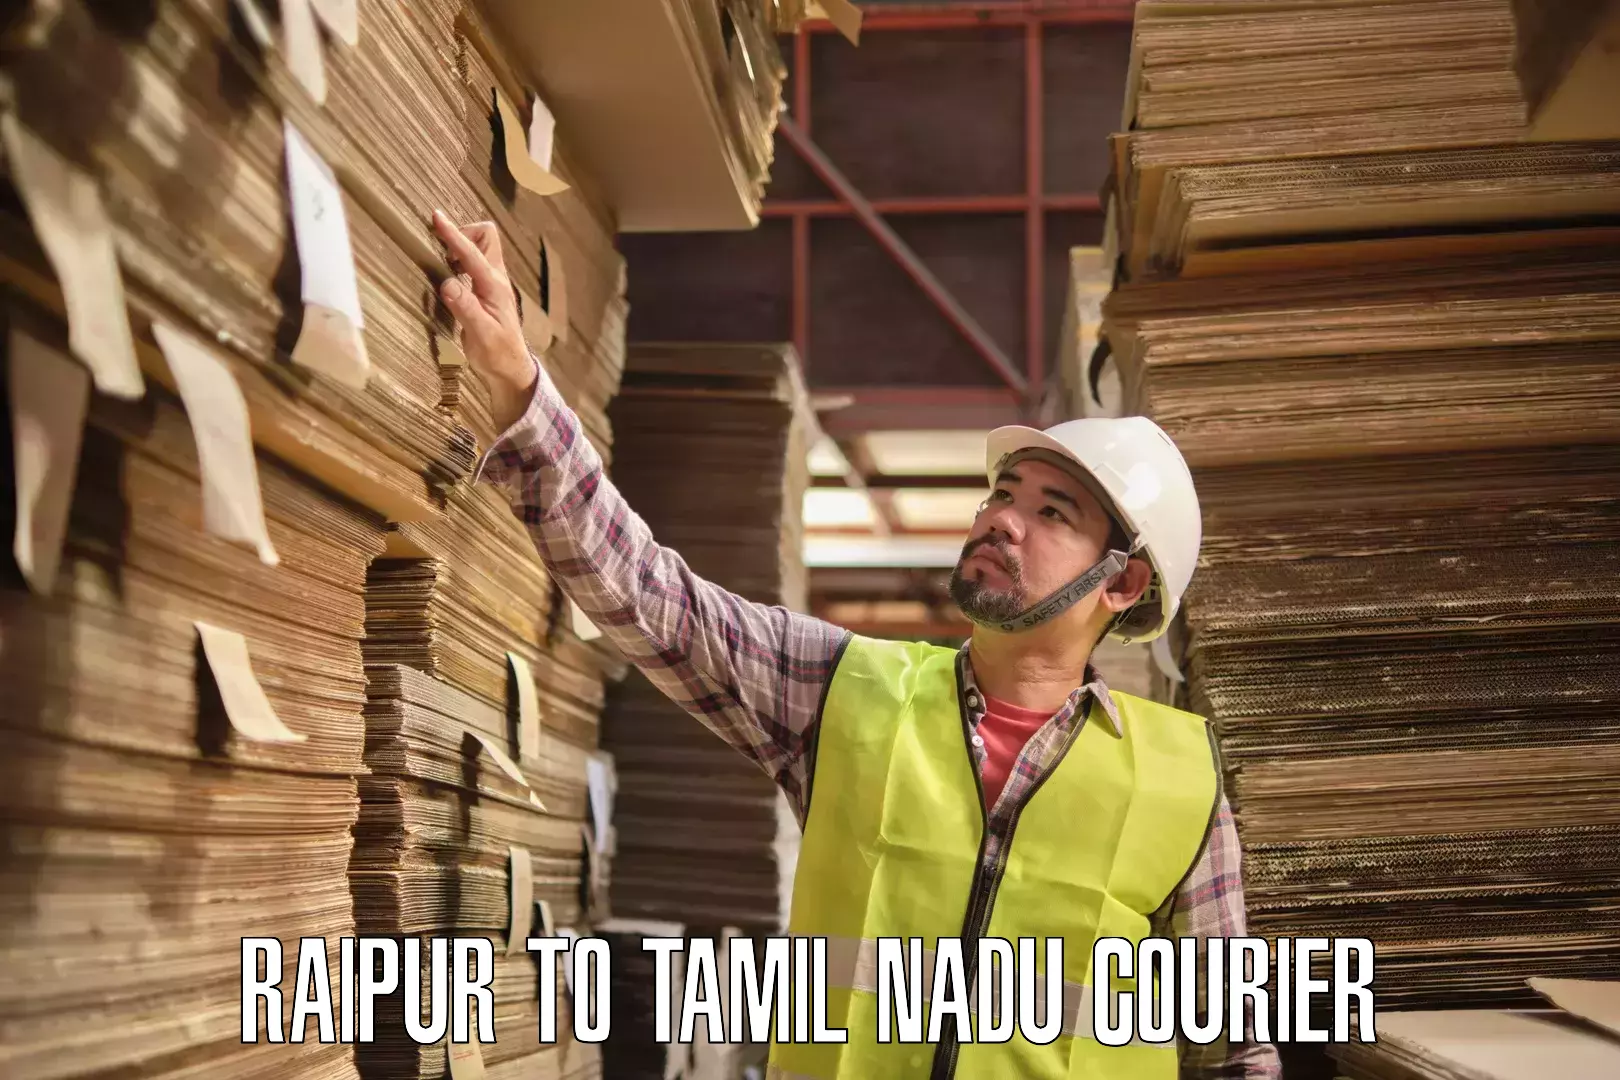 Reliable logistics providers Raipur to Tamil Nadu